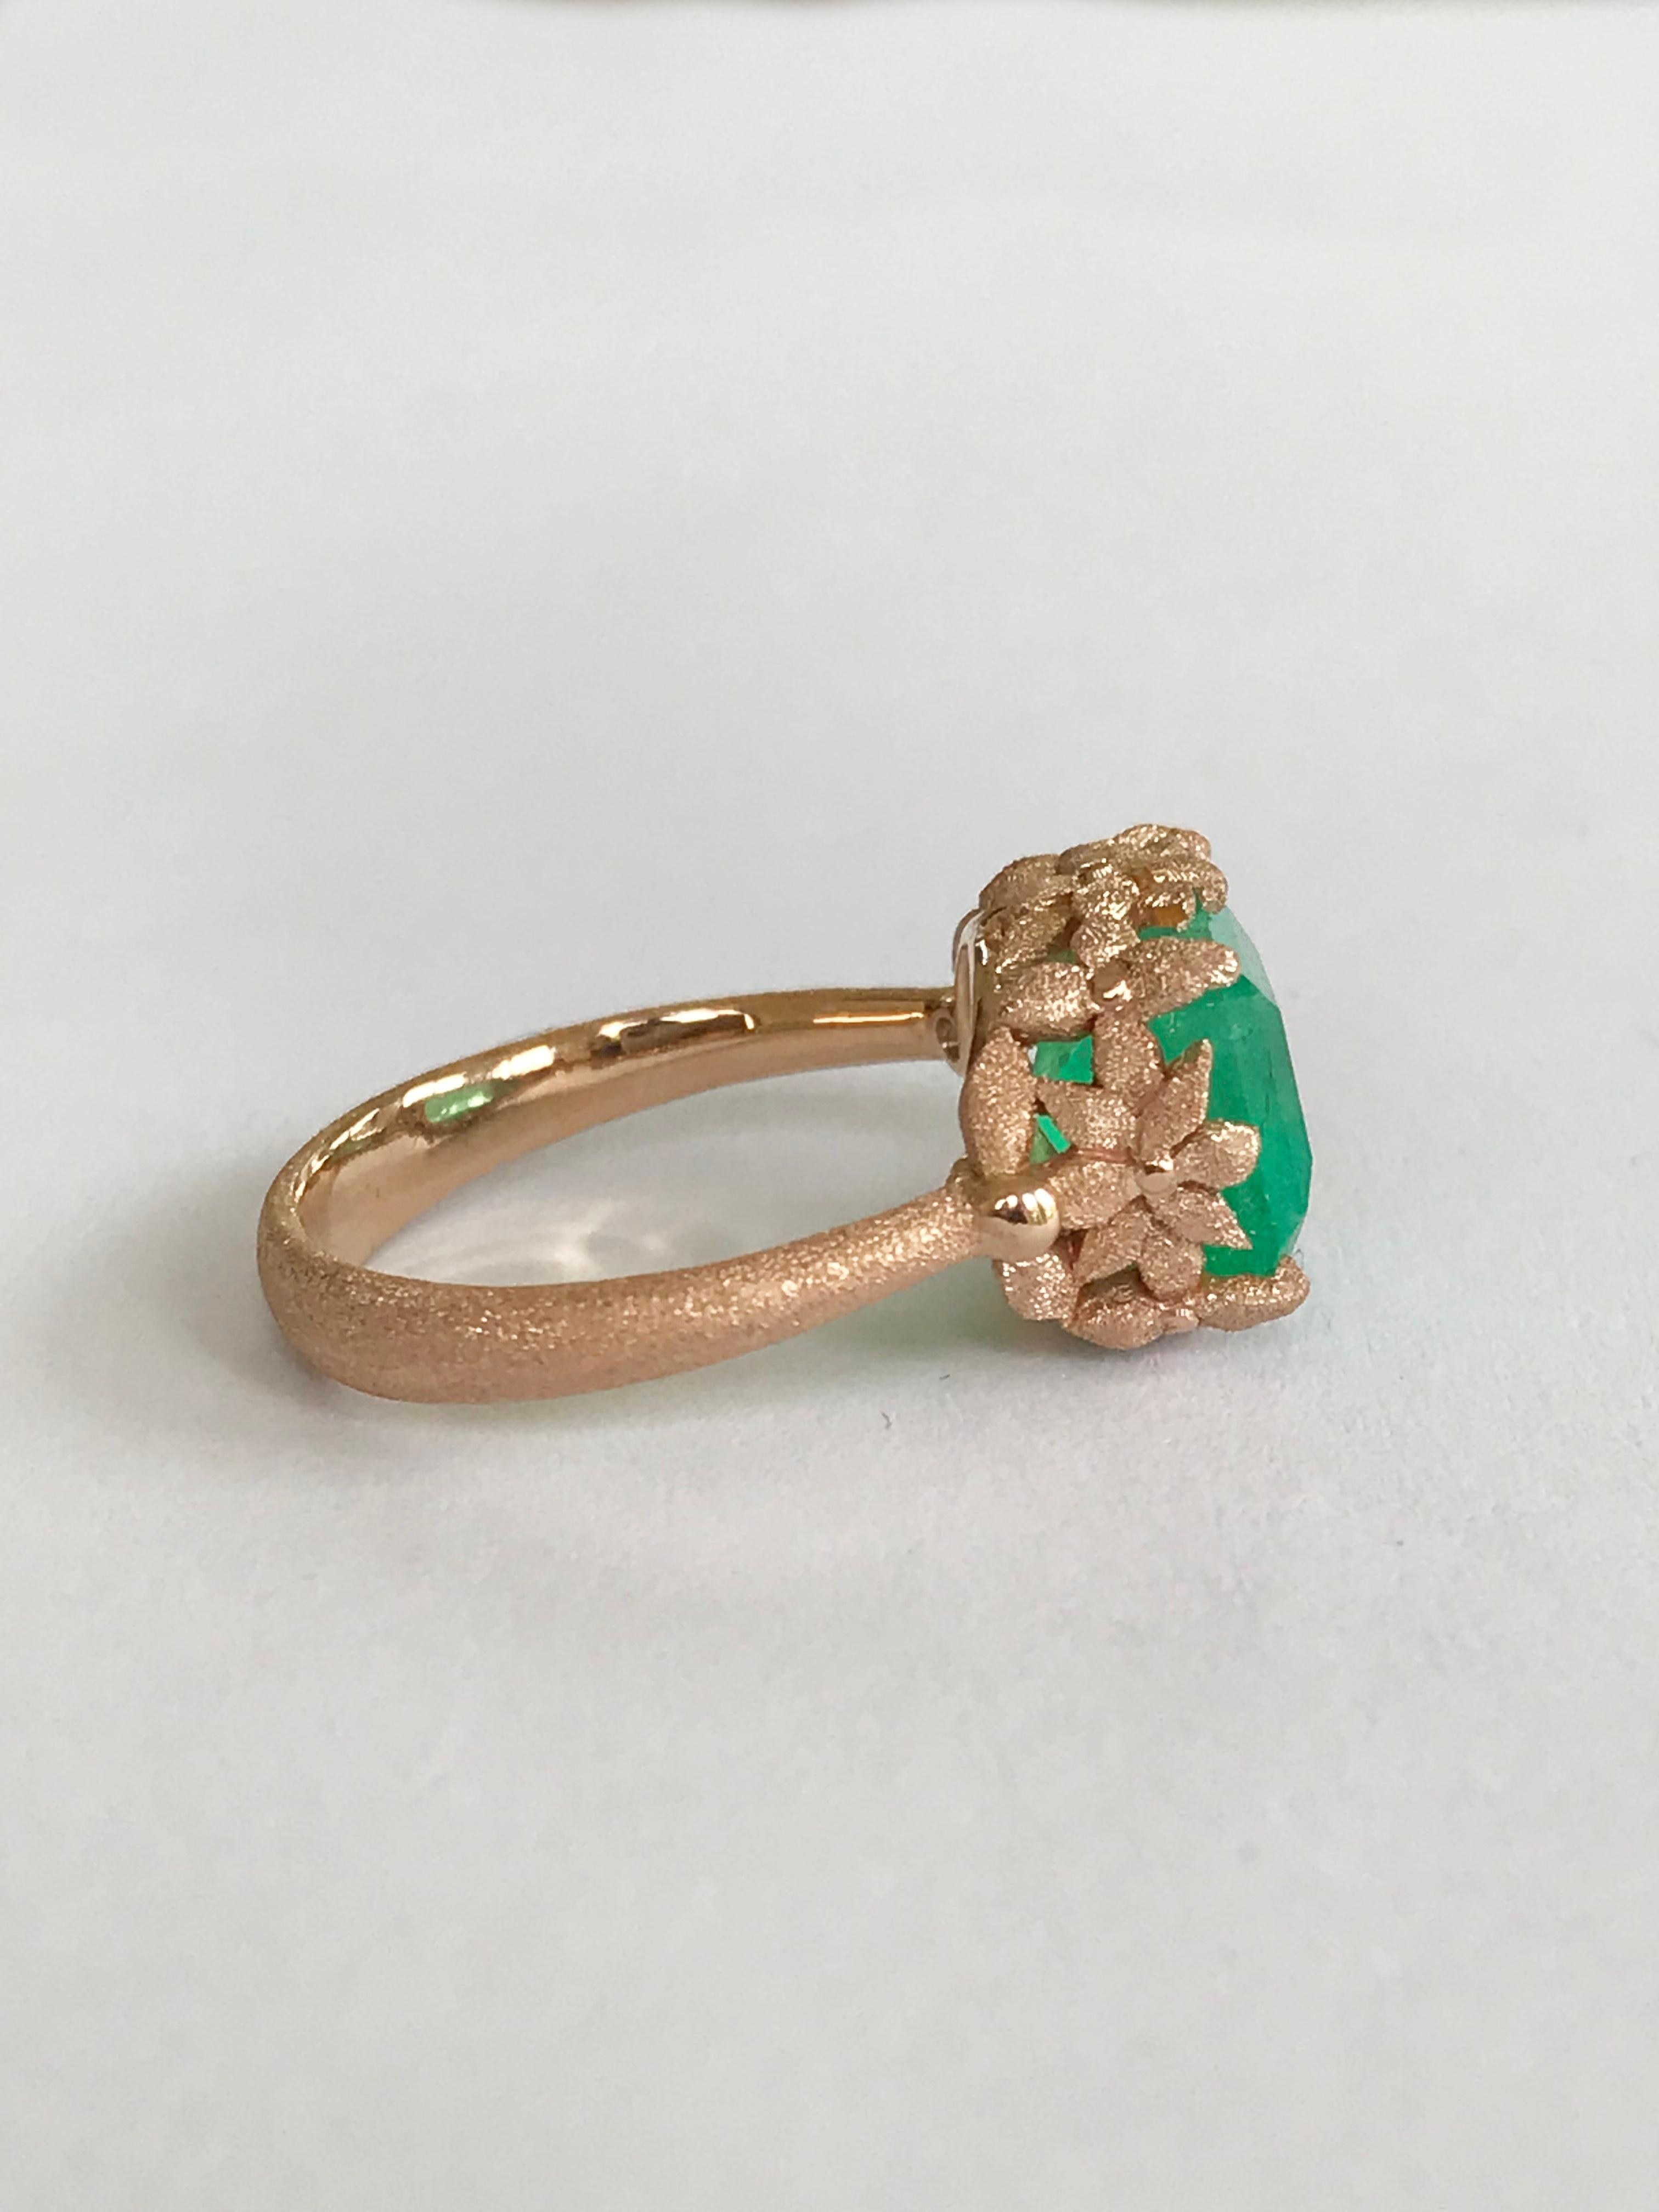 Dalben 3.57 Carat Emerald Cut Emerald Rose Gold Ring For Sale 4